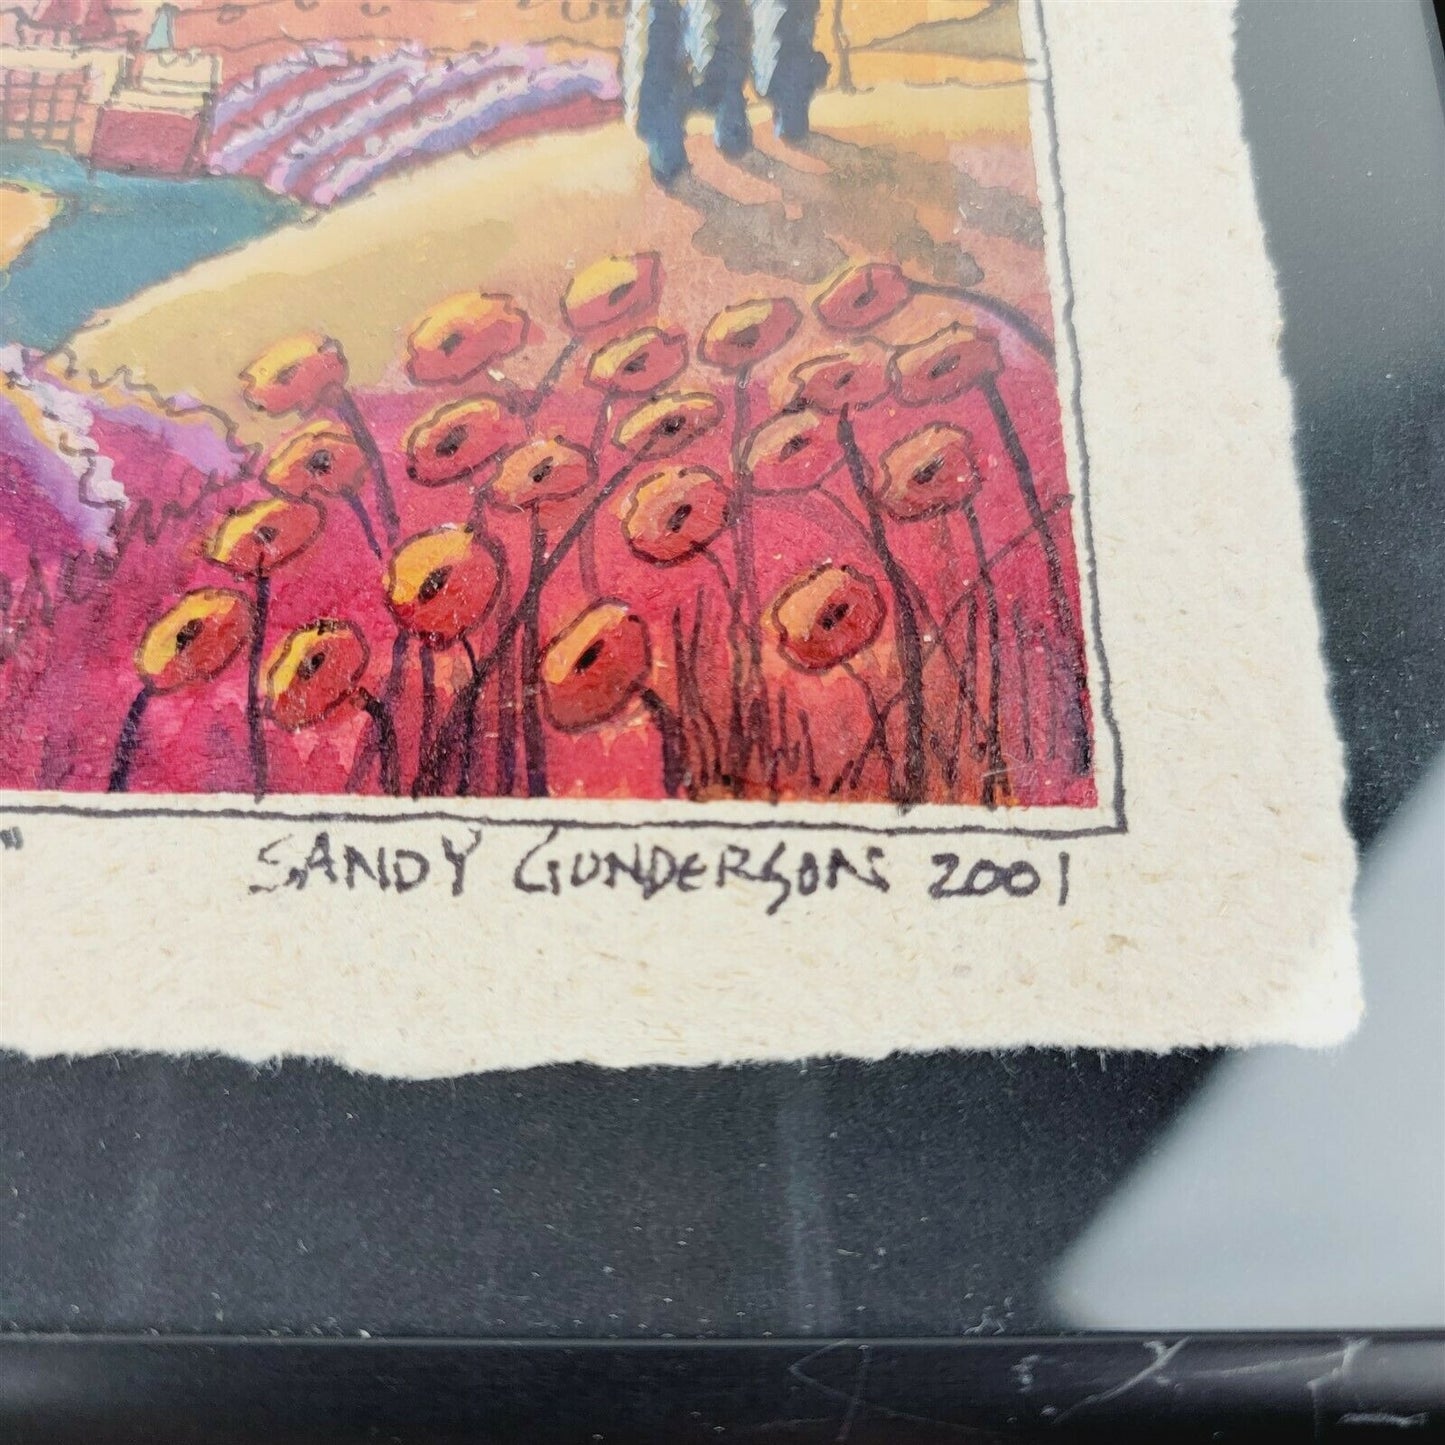 Sandy Gunderson Bass Art "As Morning Breaks" Watercolor 2001 - 8" x 8"